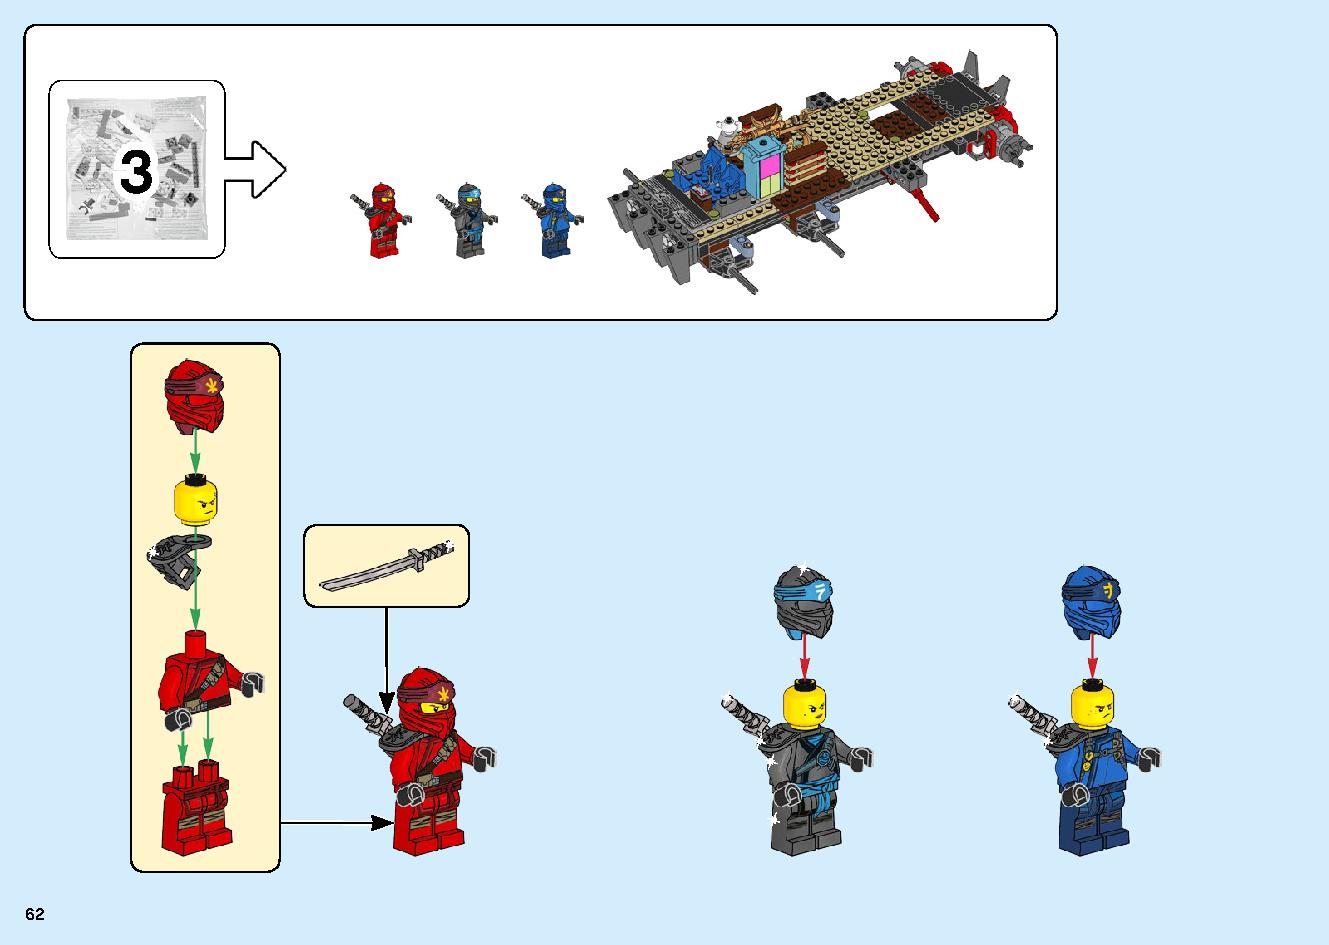 陸上戦艦バウンティ号 70677 レゴの商品情報 レゴの説明書・組立方法 62 page